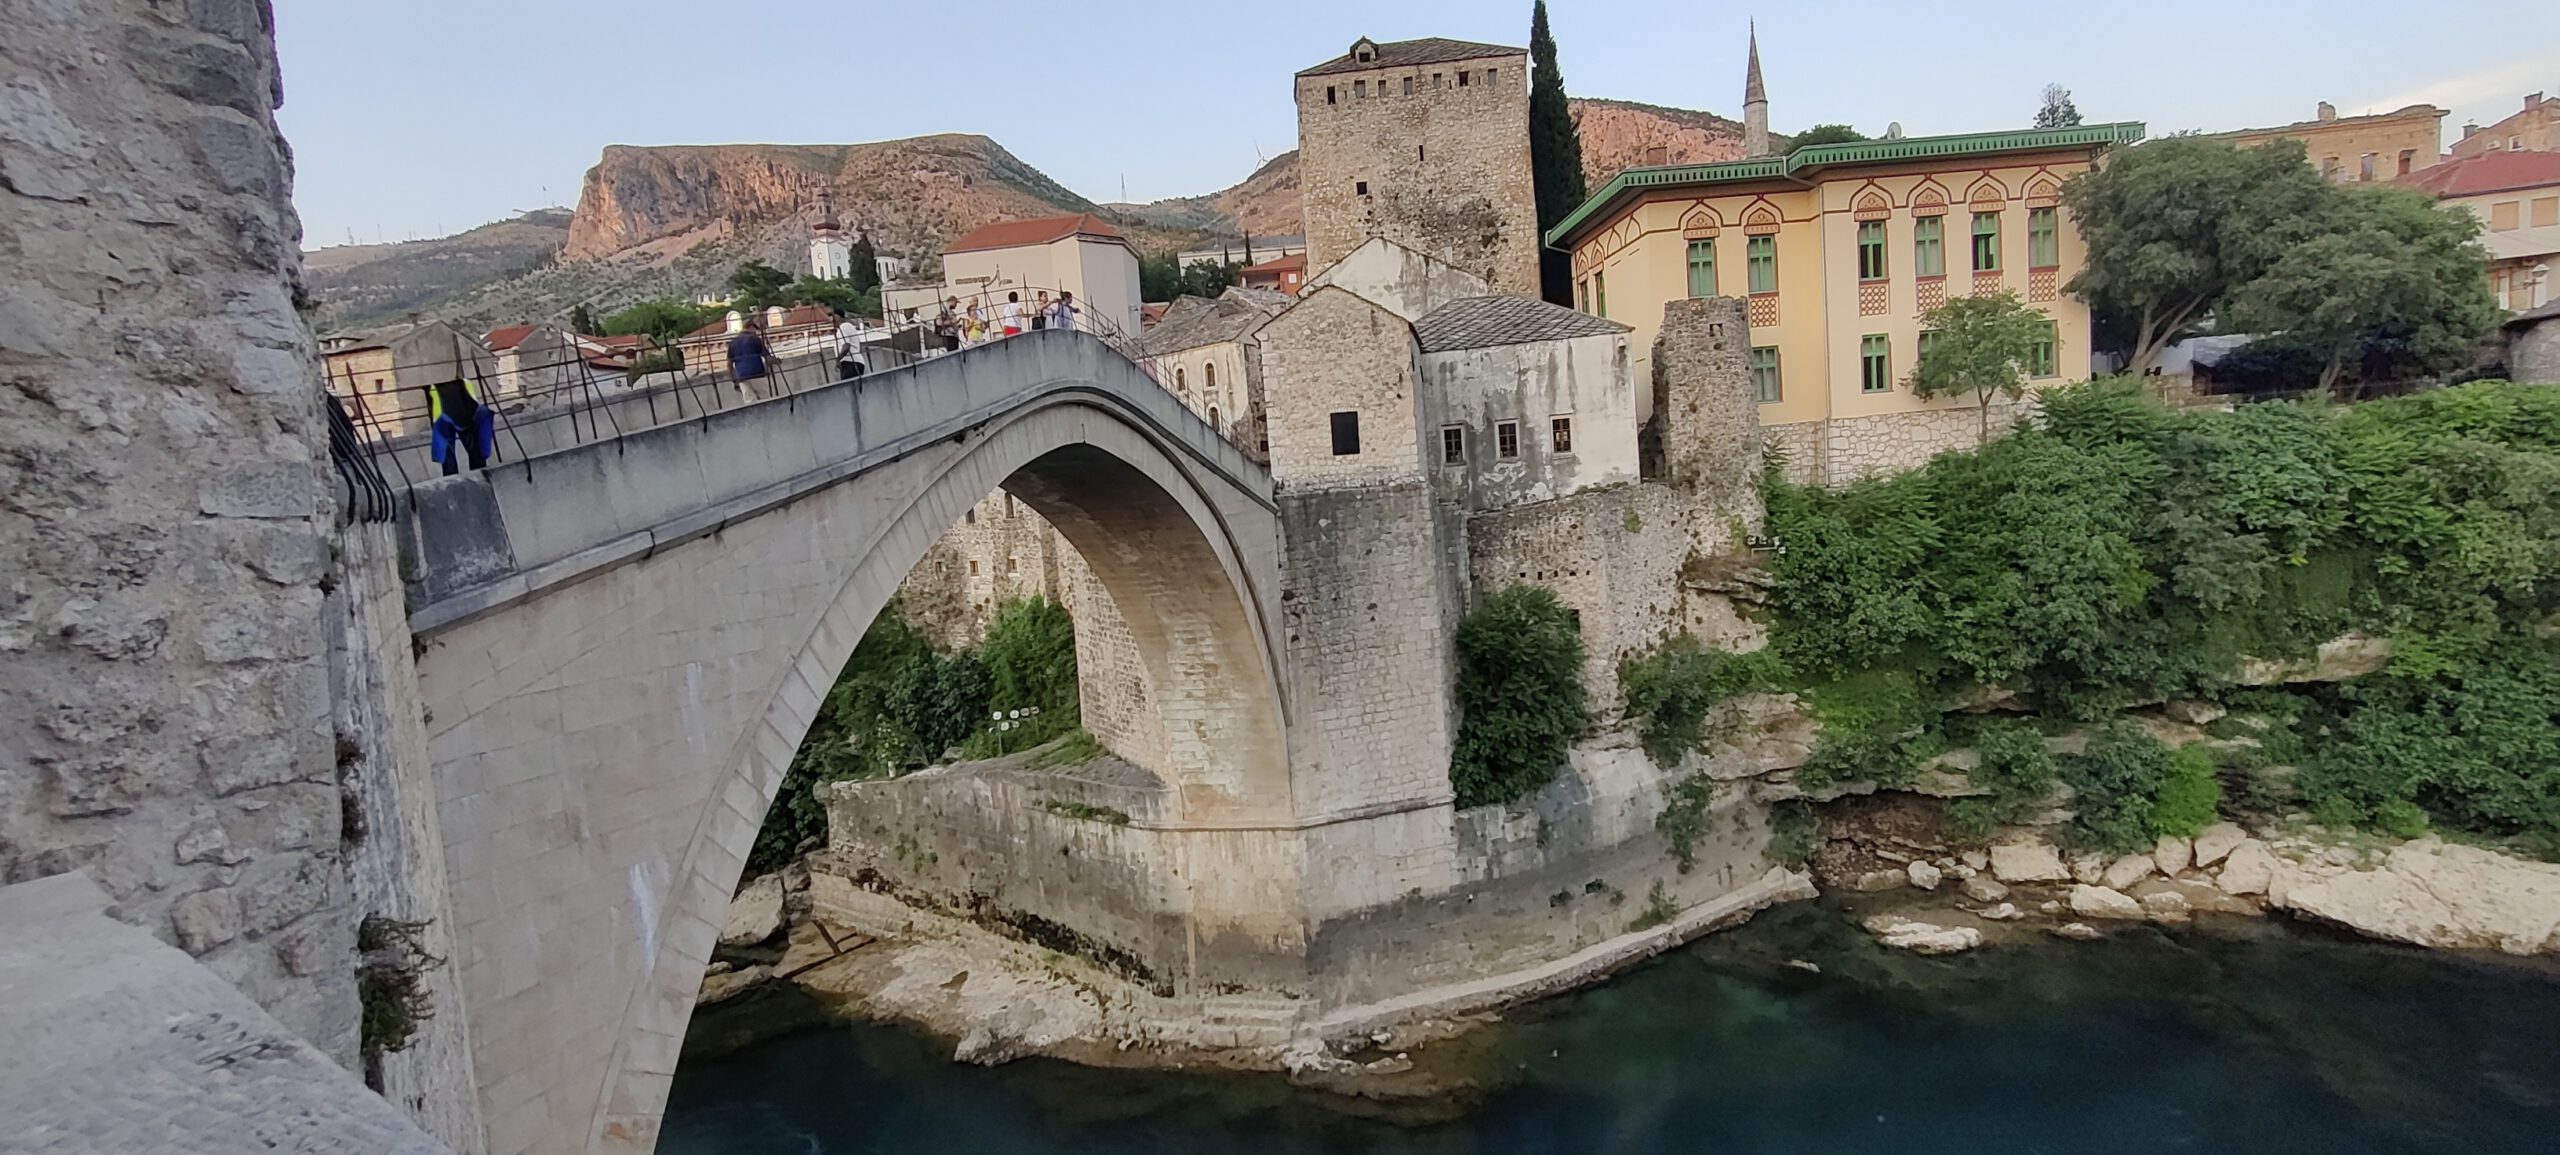 Stari Most Brücke in Mostar